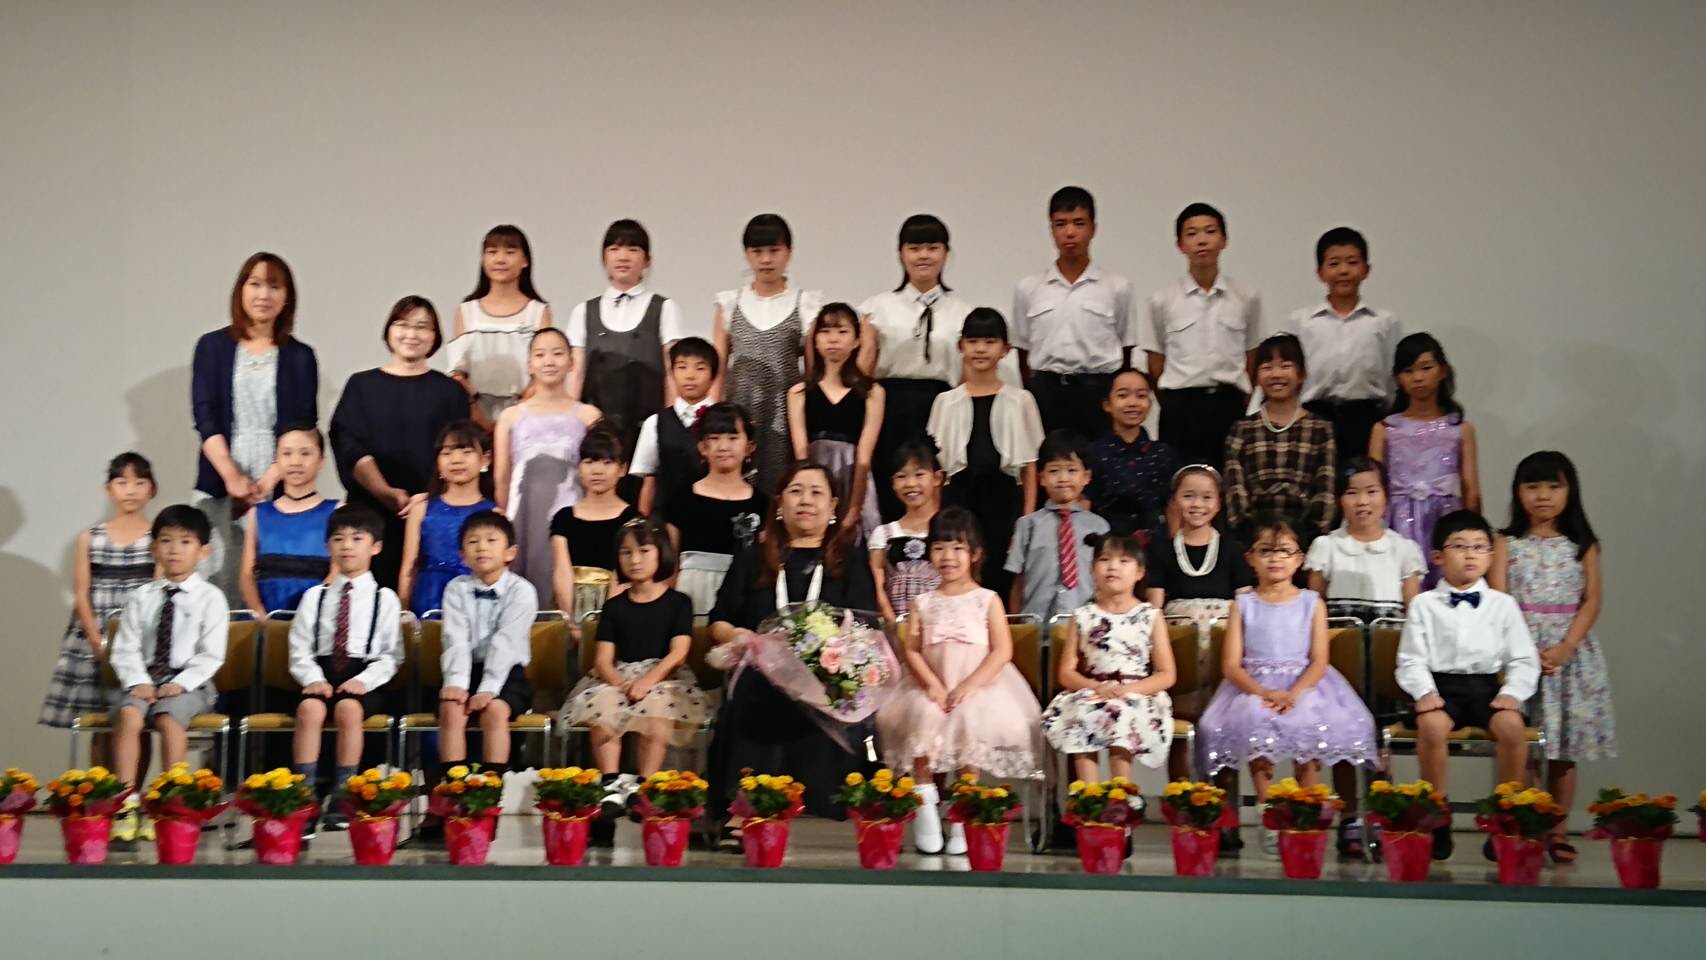 ピアノ発表会終わりました 知多市で習い事 音楽教室なら駒田リトミック ピアノ教室へ